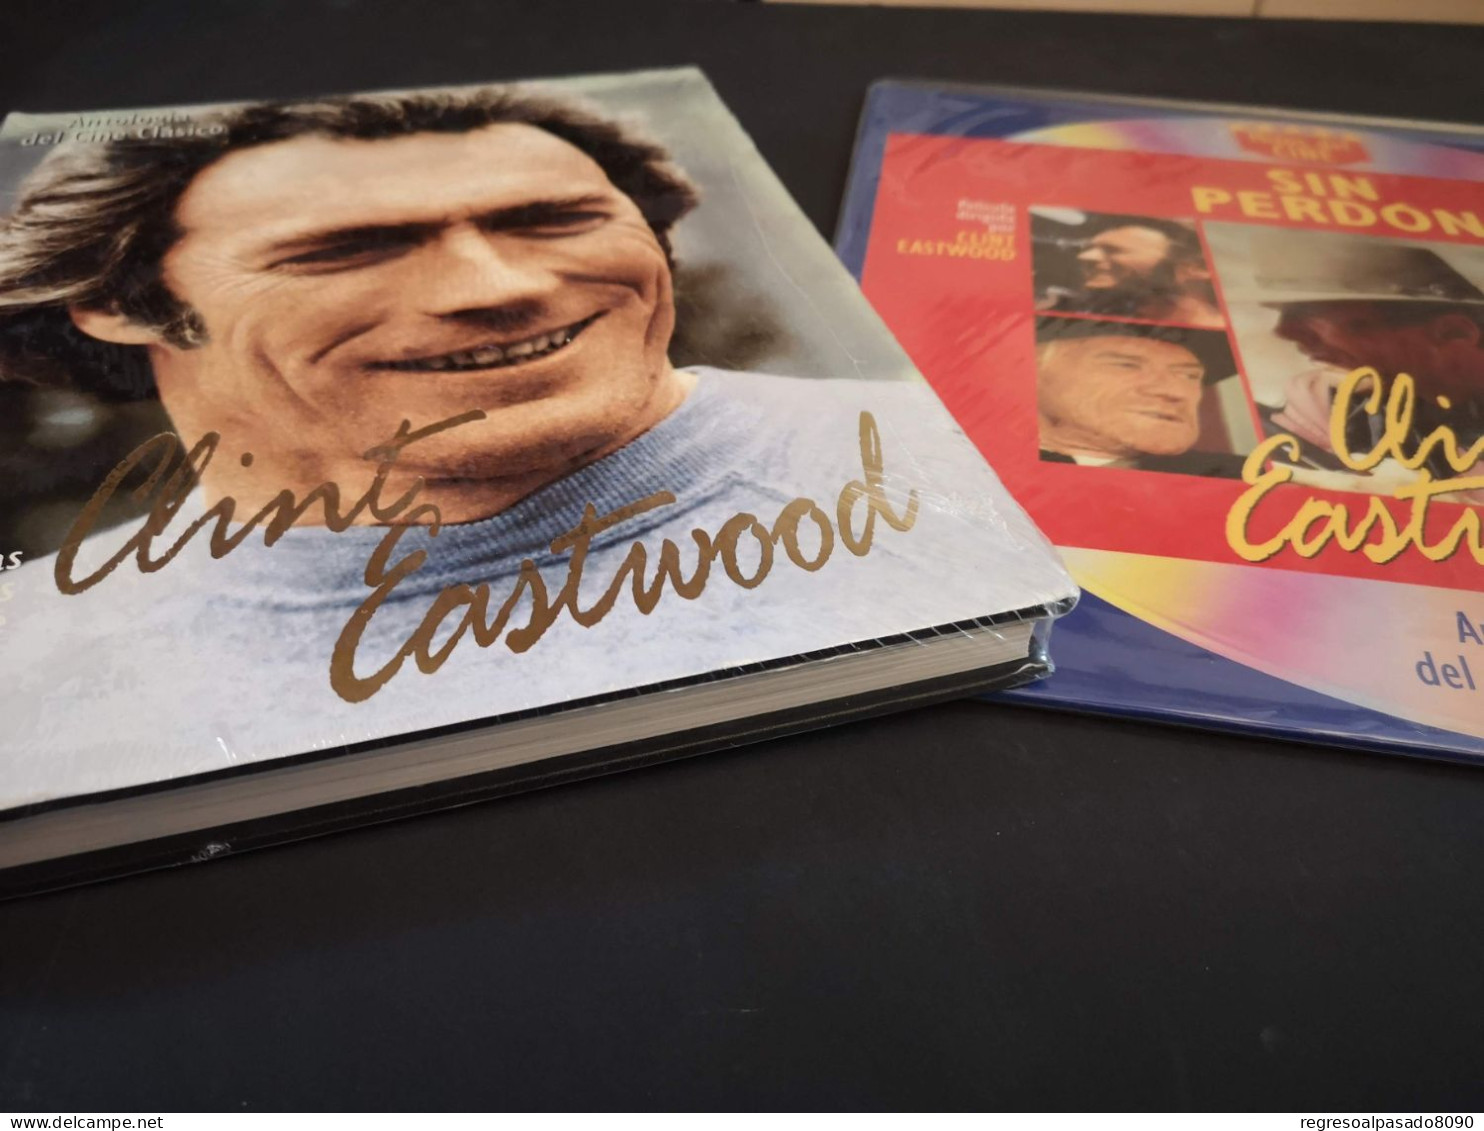 Klint Eastwood Libro Y Película Laser Disc Laserdisc Sin Perdón. Colección Mitos Del Cine Planeta Años 90 - Classic